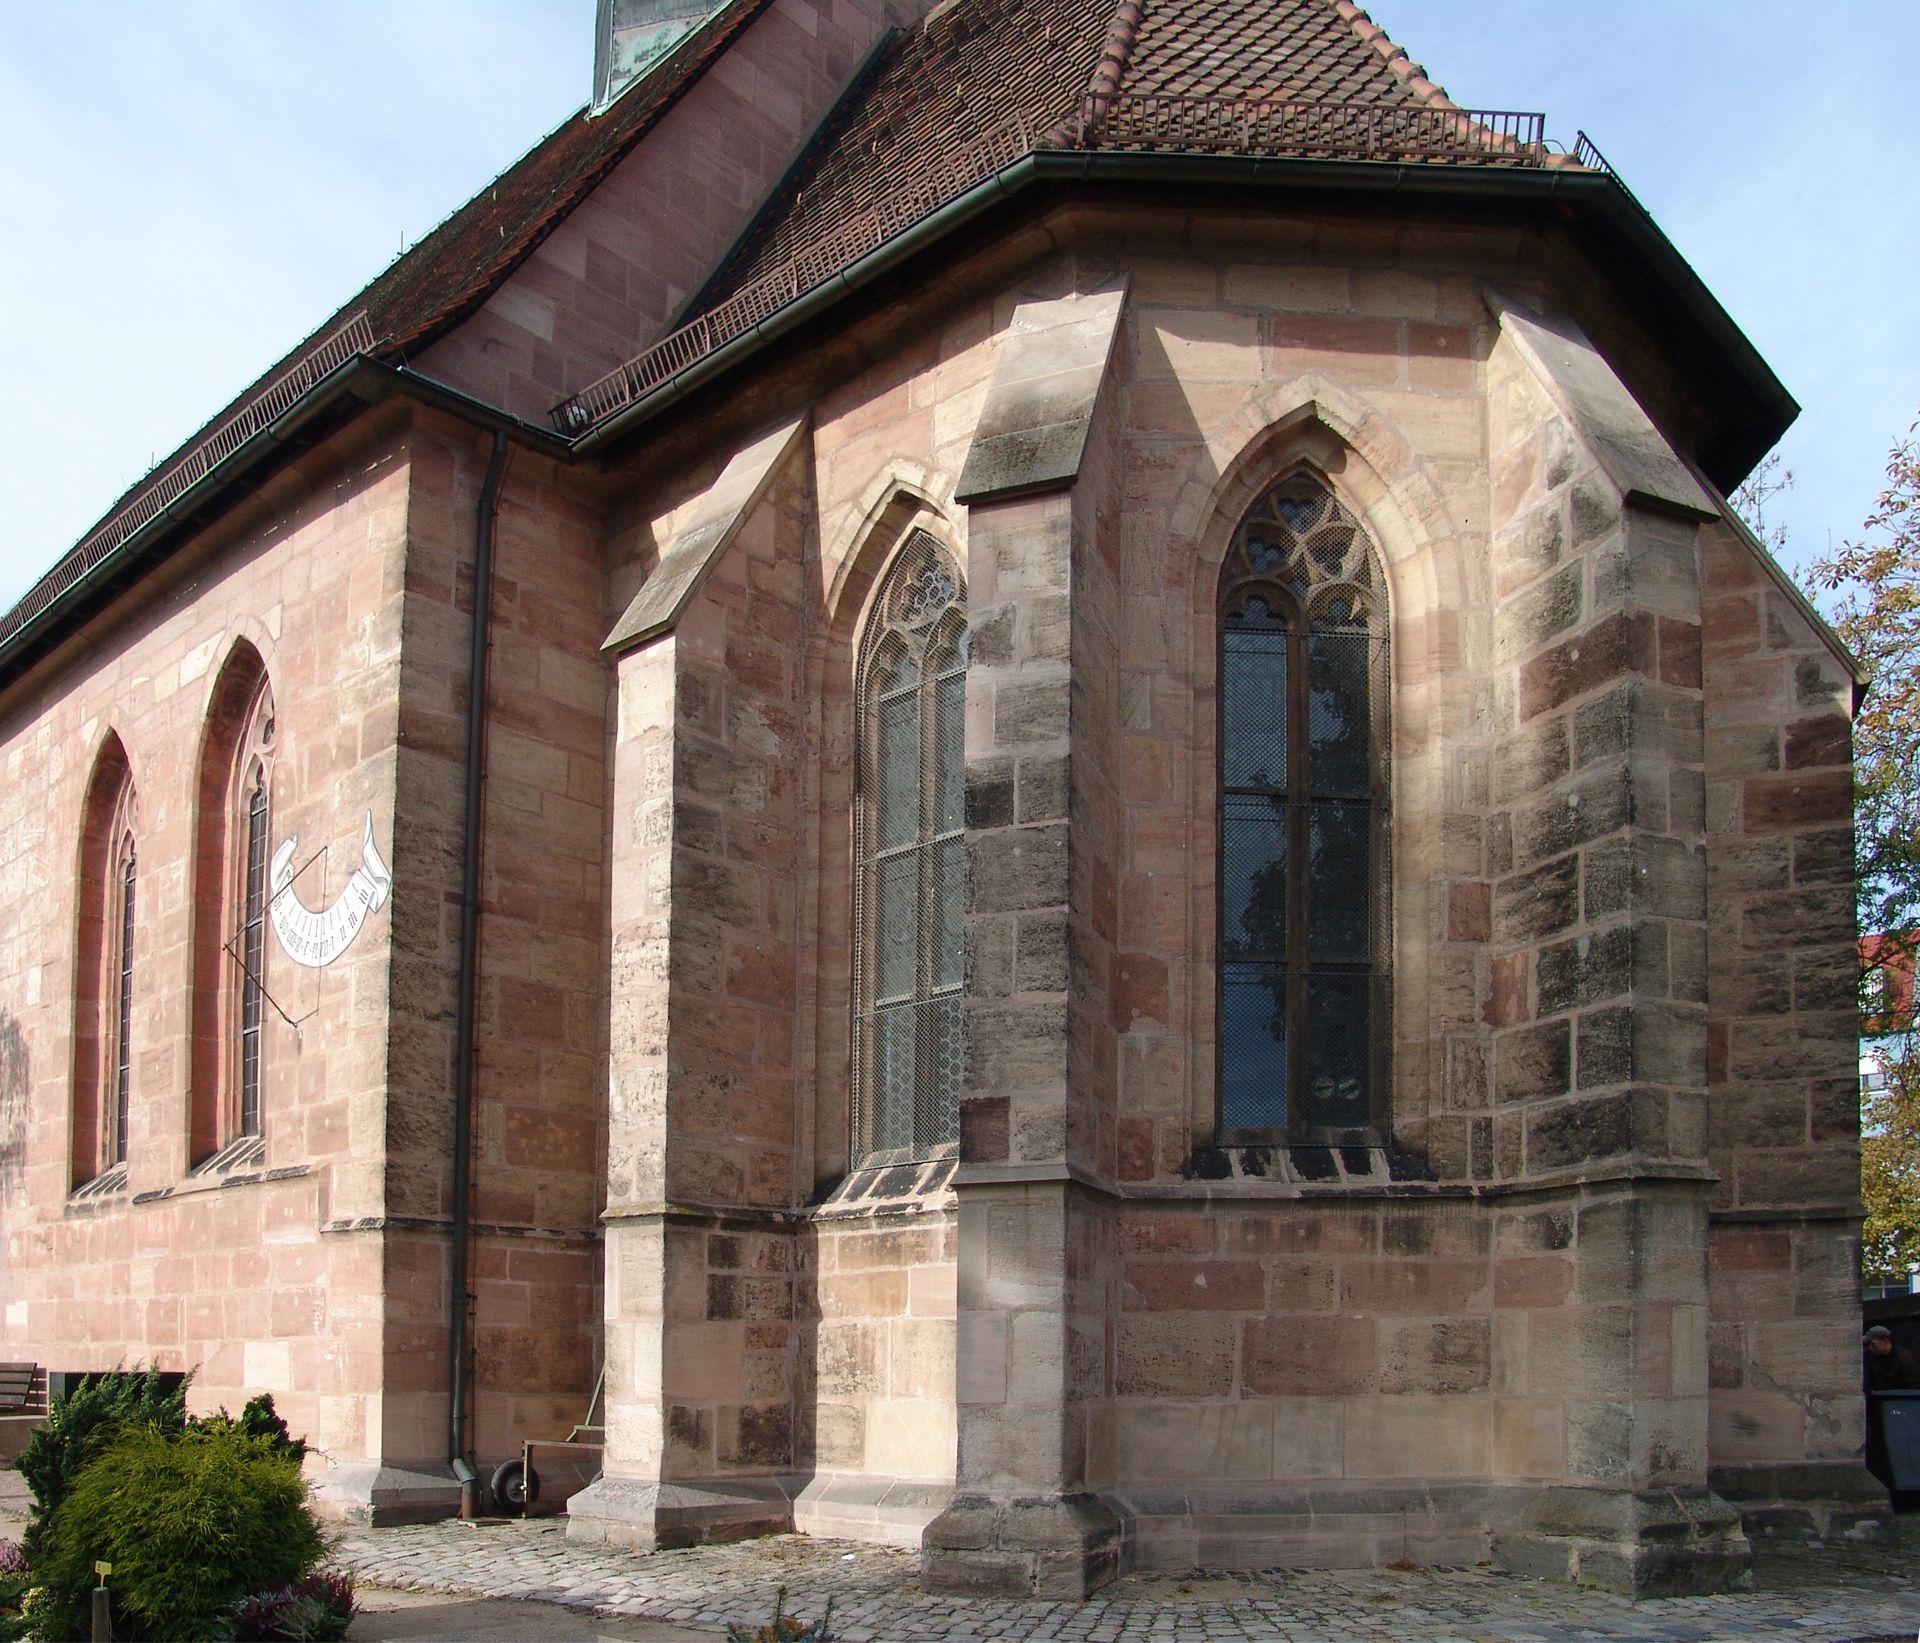 St. Jobst Chor, 1356